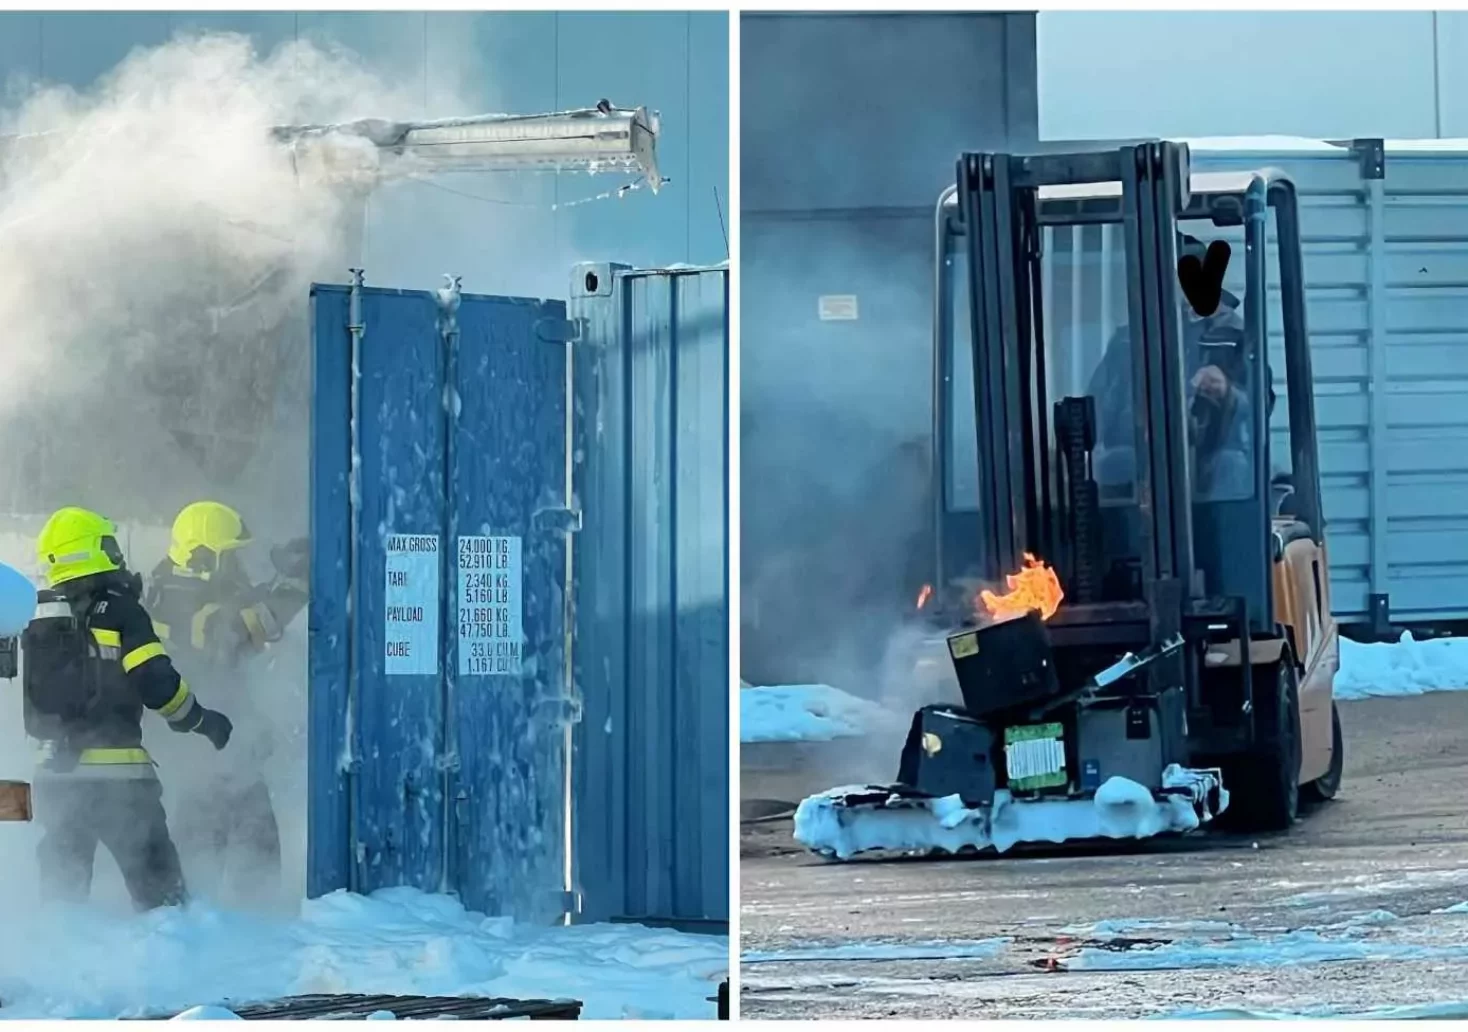 Foto in Beitrag von 5min.at: Zu sehen ist eine Fotomontage von einer brennenden Batterie und einem Container, aus dem es raucht.